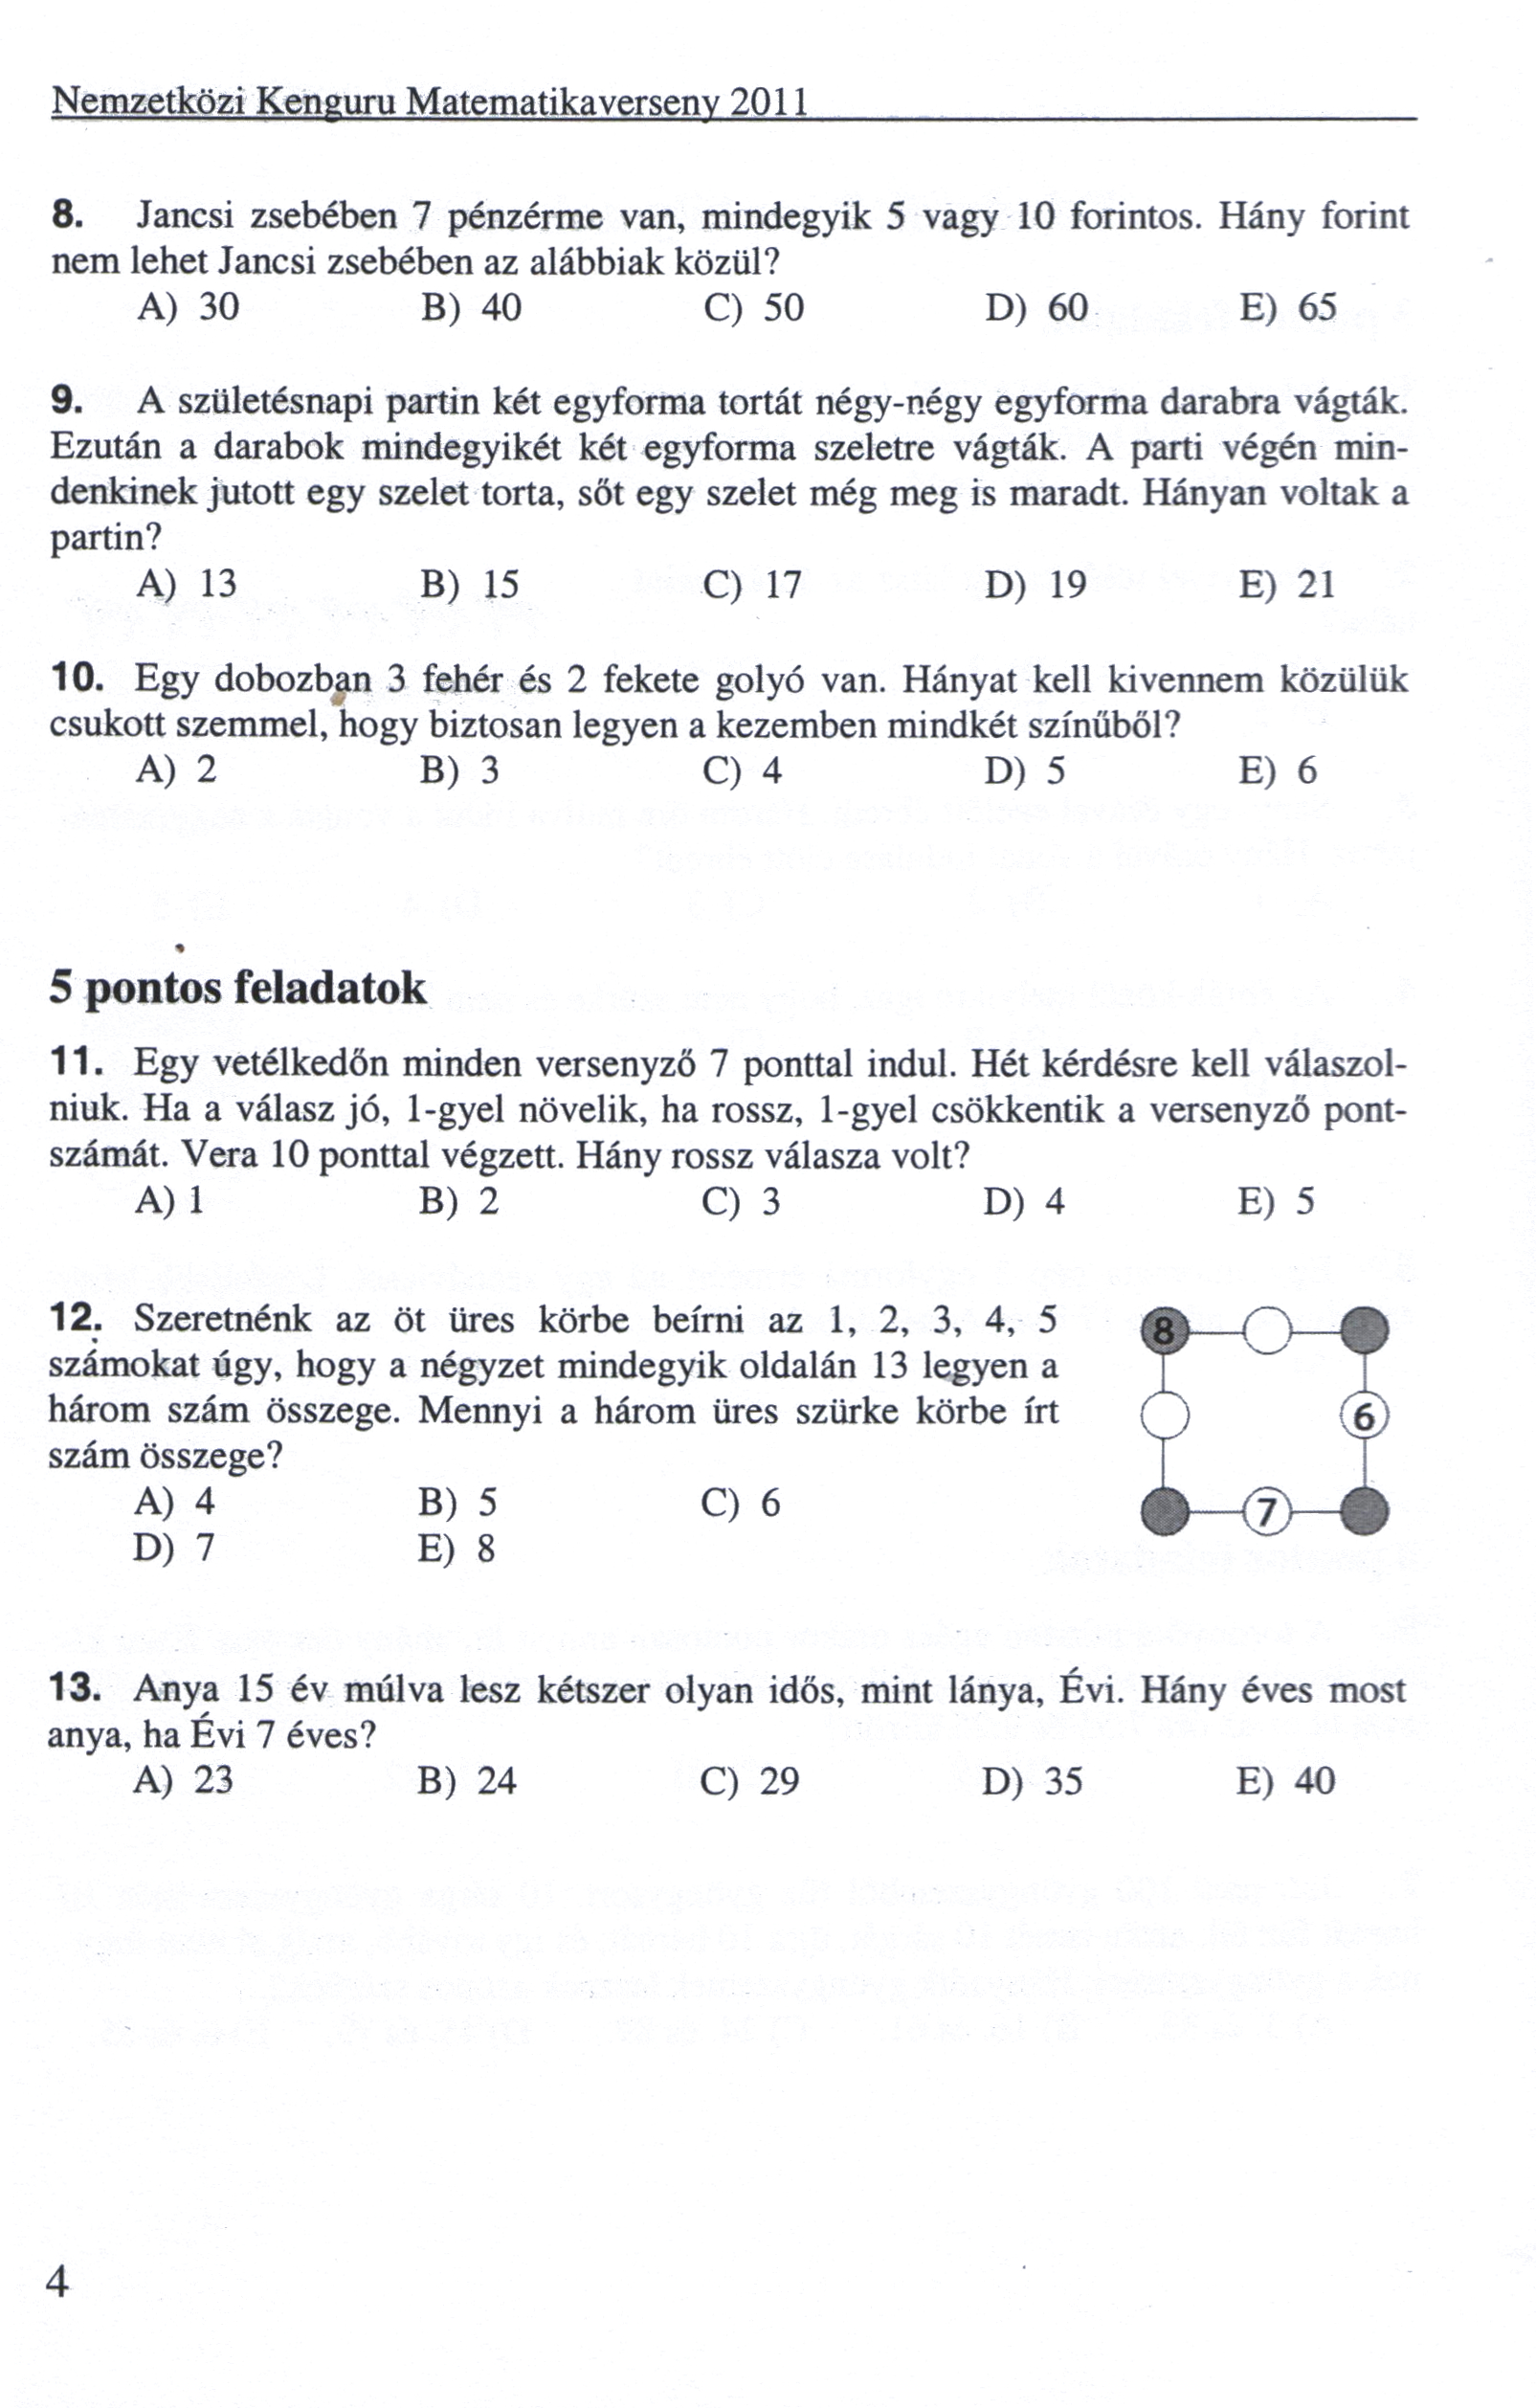 zrínyi ilona matematikaverseny 2015 feladatok 2 osztályos magyarul